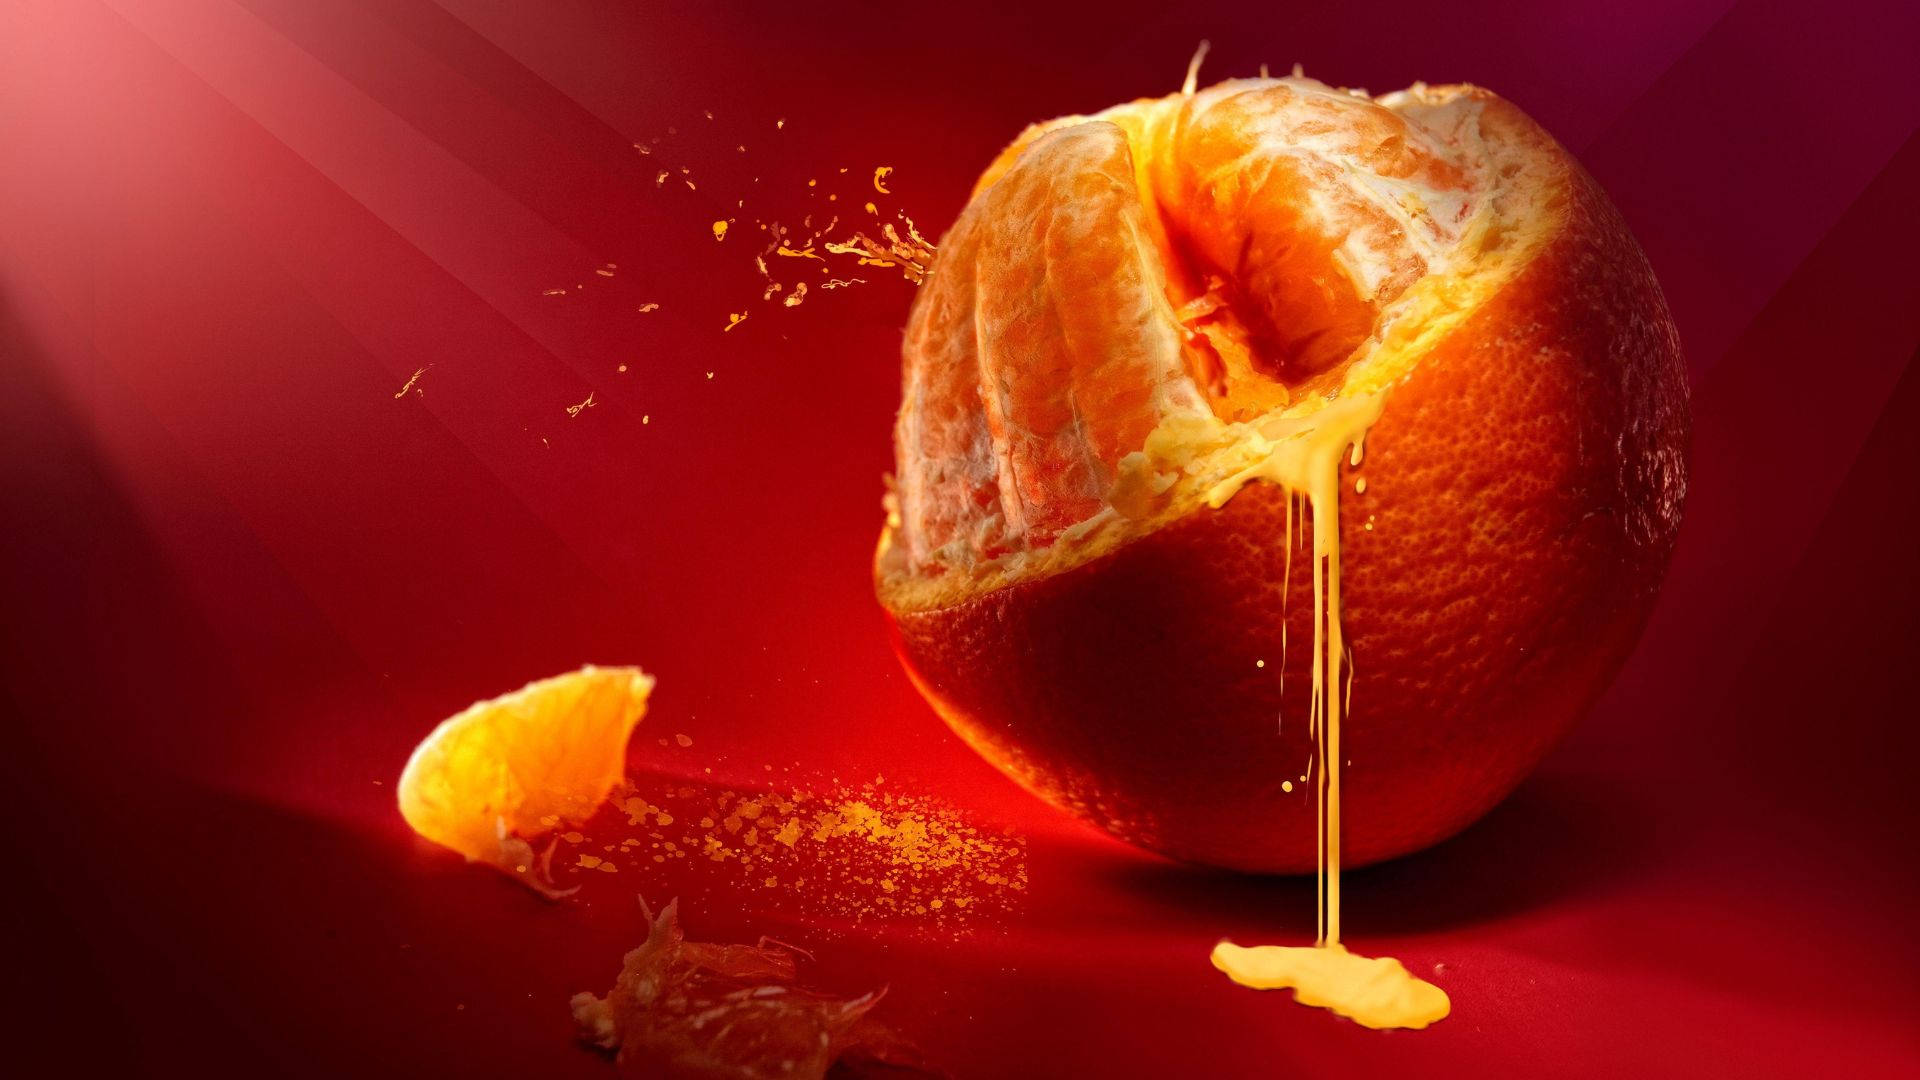 Dripping Orange Fruit